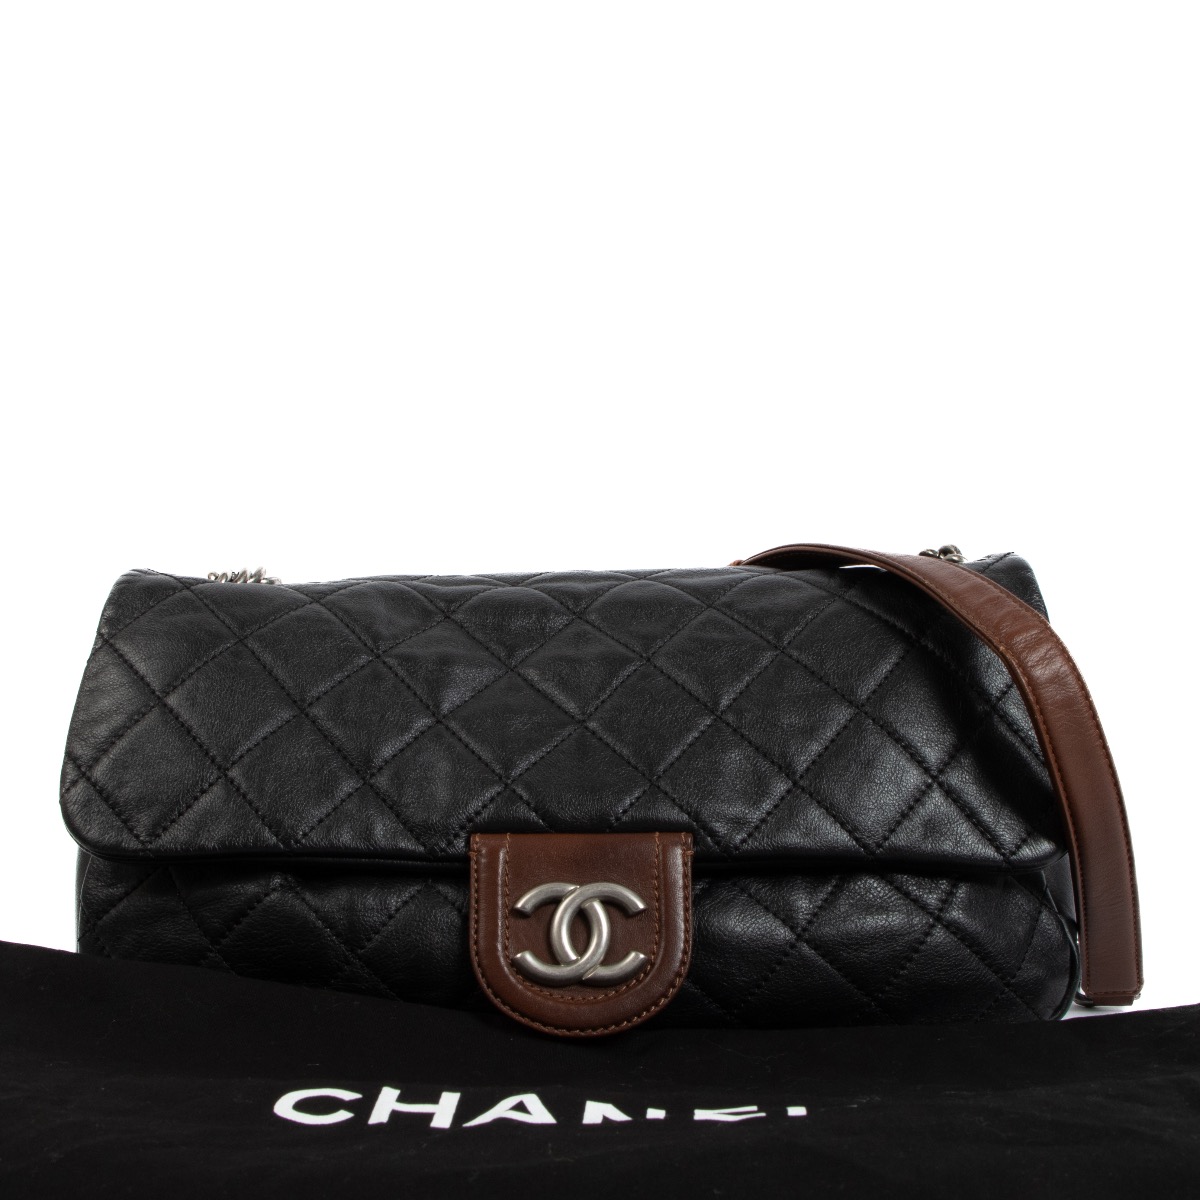 Chanel Louis Vuitton Shop -  1690892422